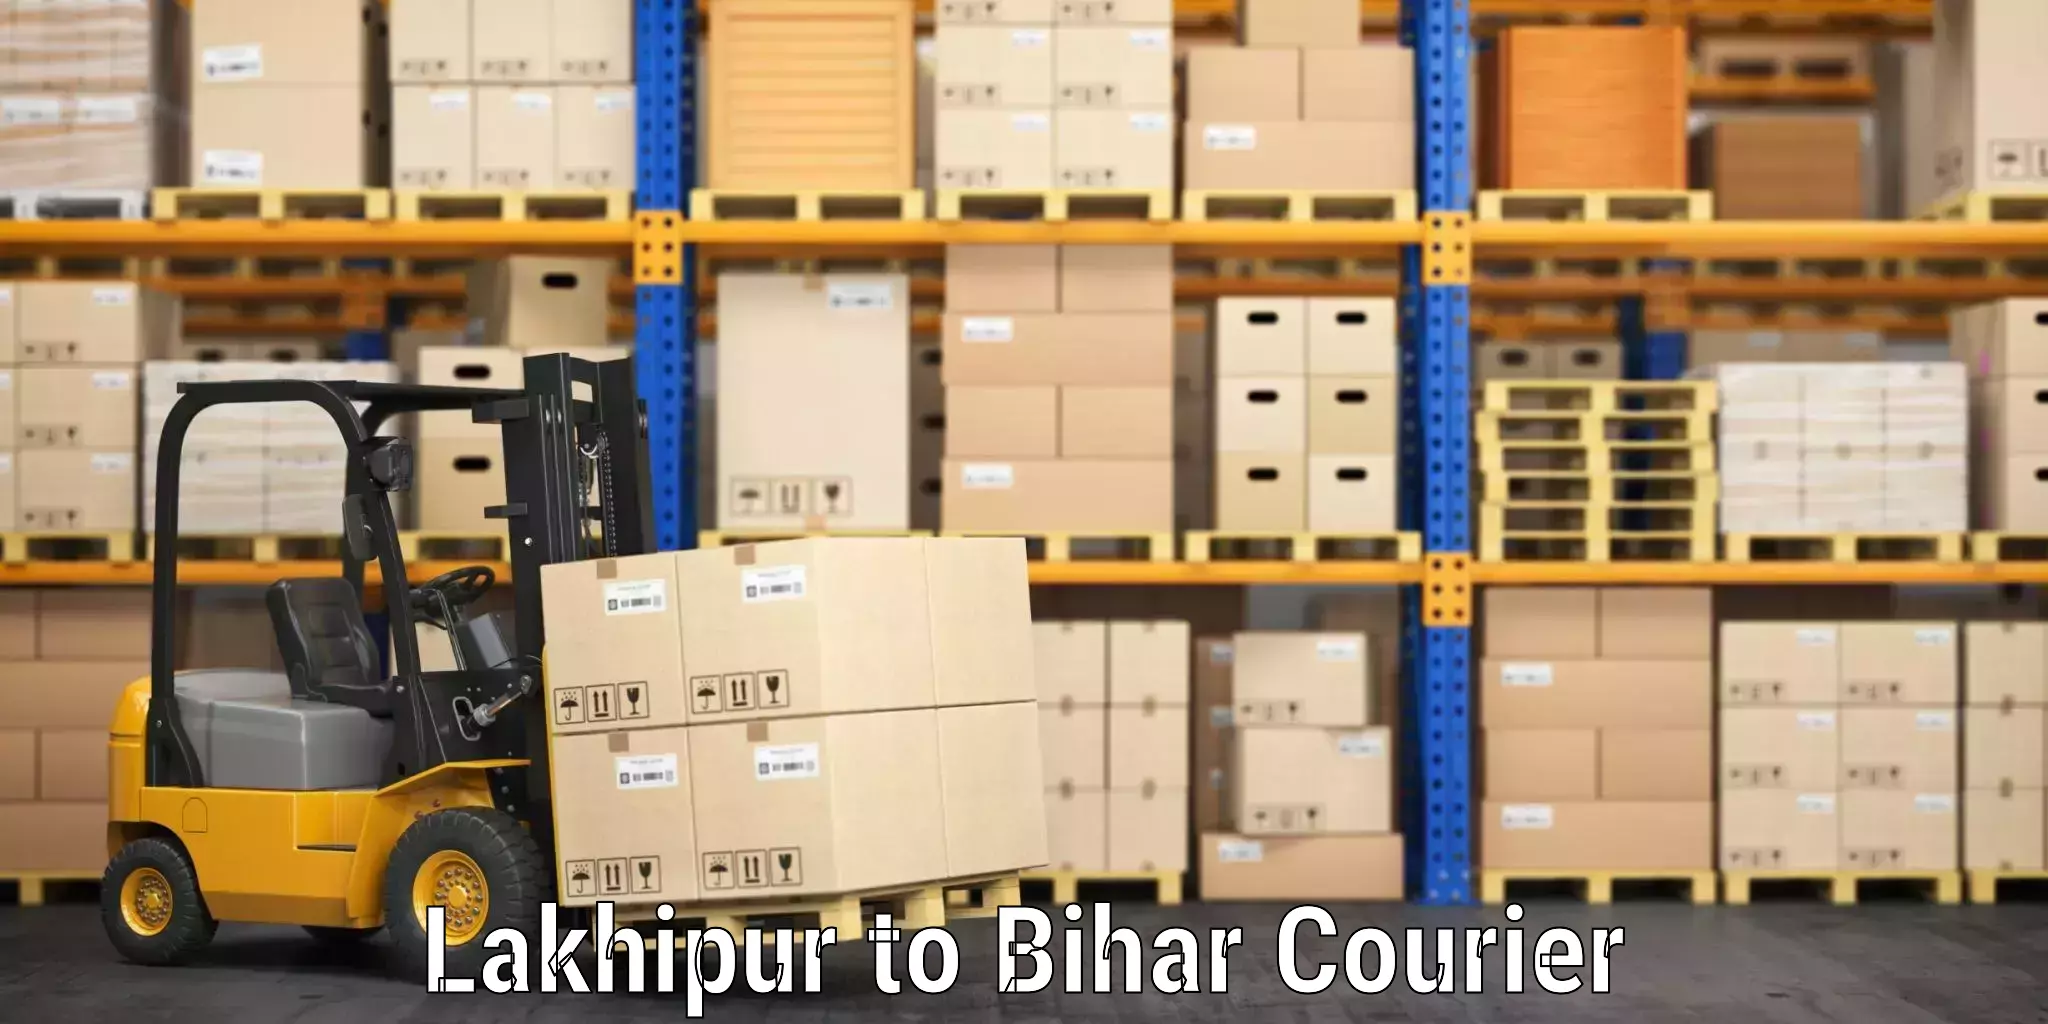 Luggage shipping planner Lakhipur to Tekari